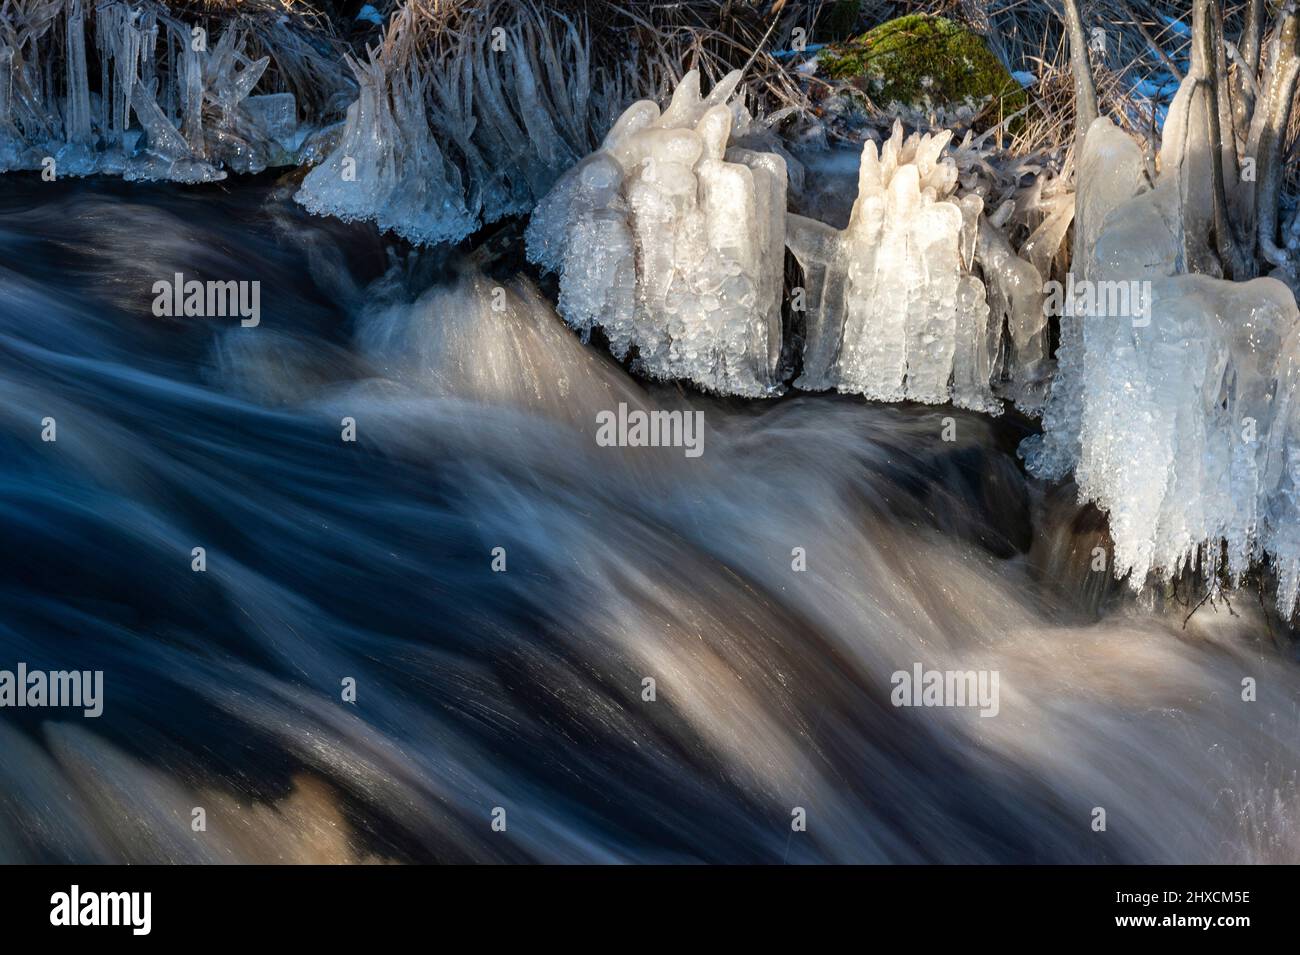 Flusso veloce e cristalli di ghiaccio sulla banca, Torup, Halland, Svezia Foto Stock